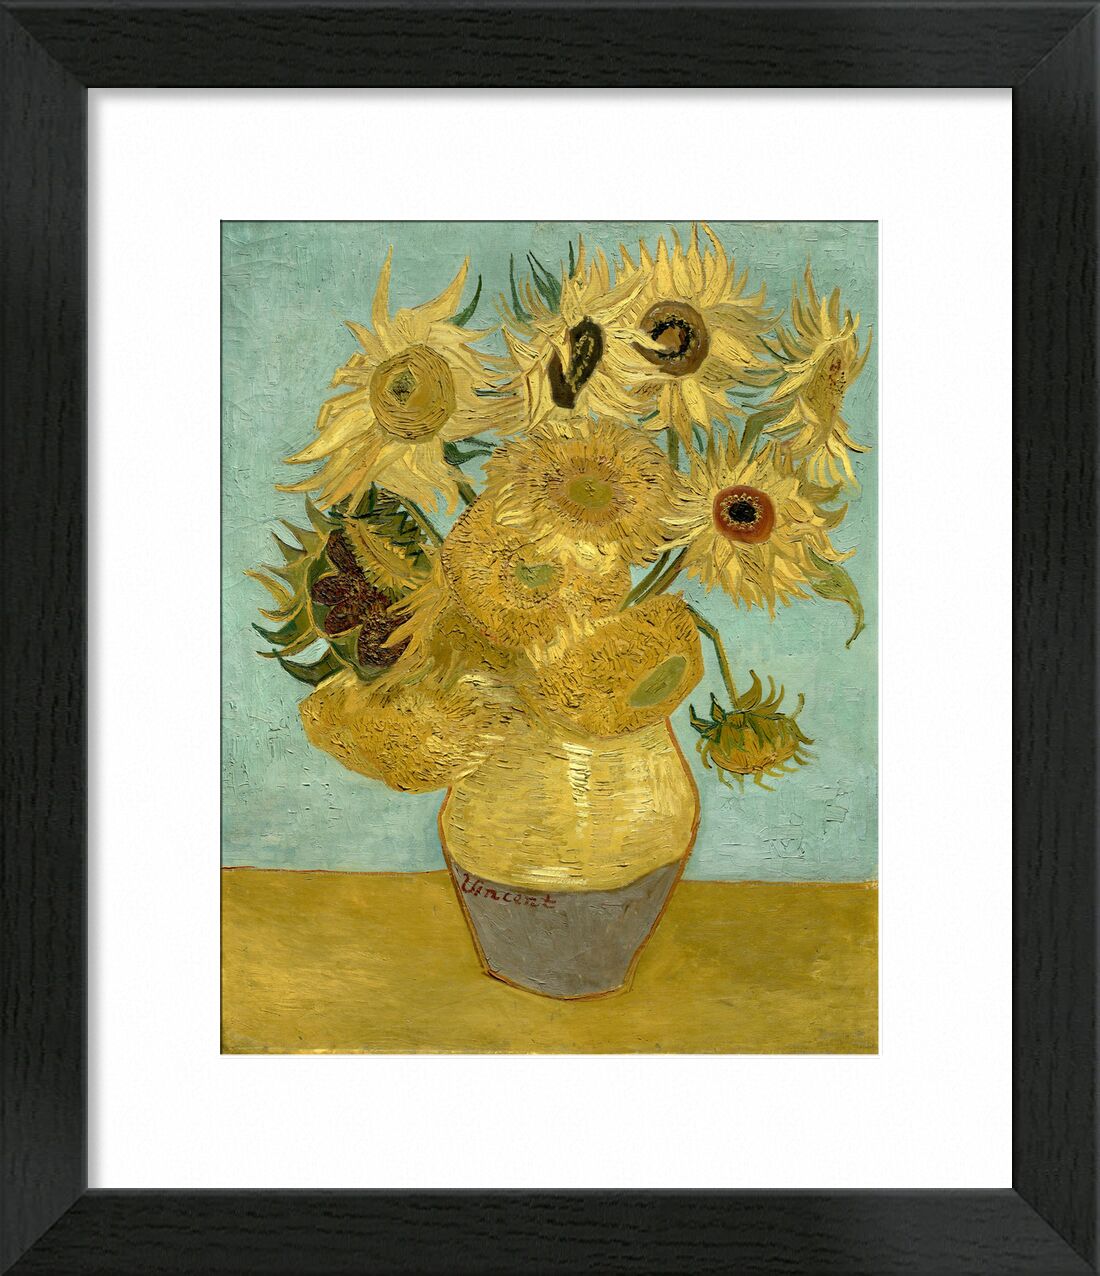 Sunflowers - Van Gogh von Bildende Kunst, Prodi Art, Sonnenblume, Malerei, Van gogh